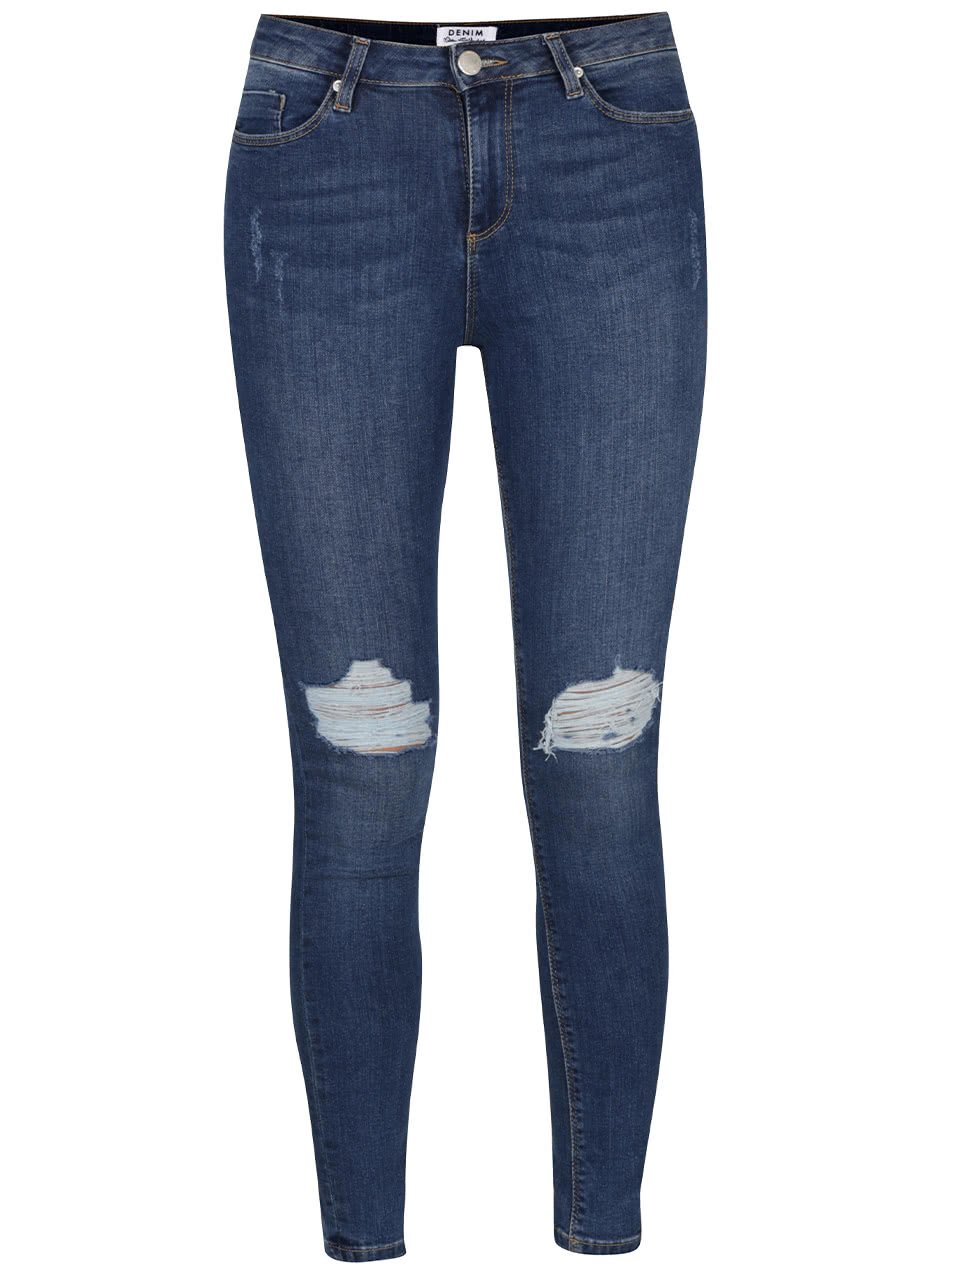 Modré super skinny džíny s potrhaným efektem Miss Selfridge